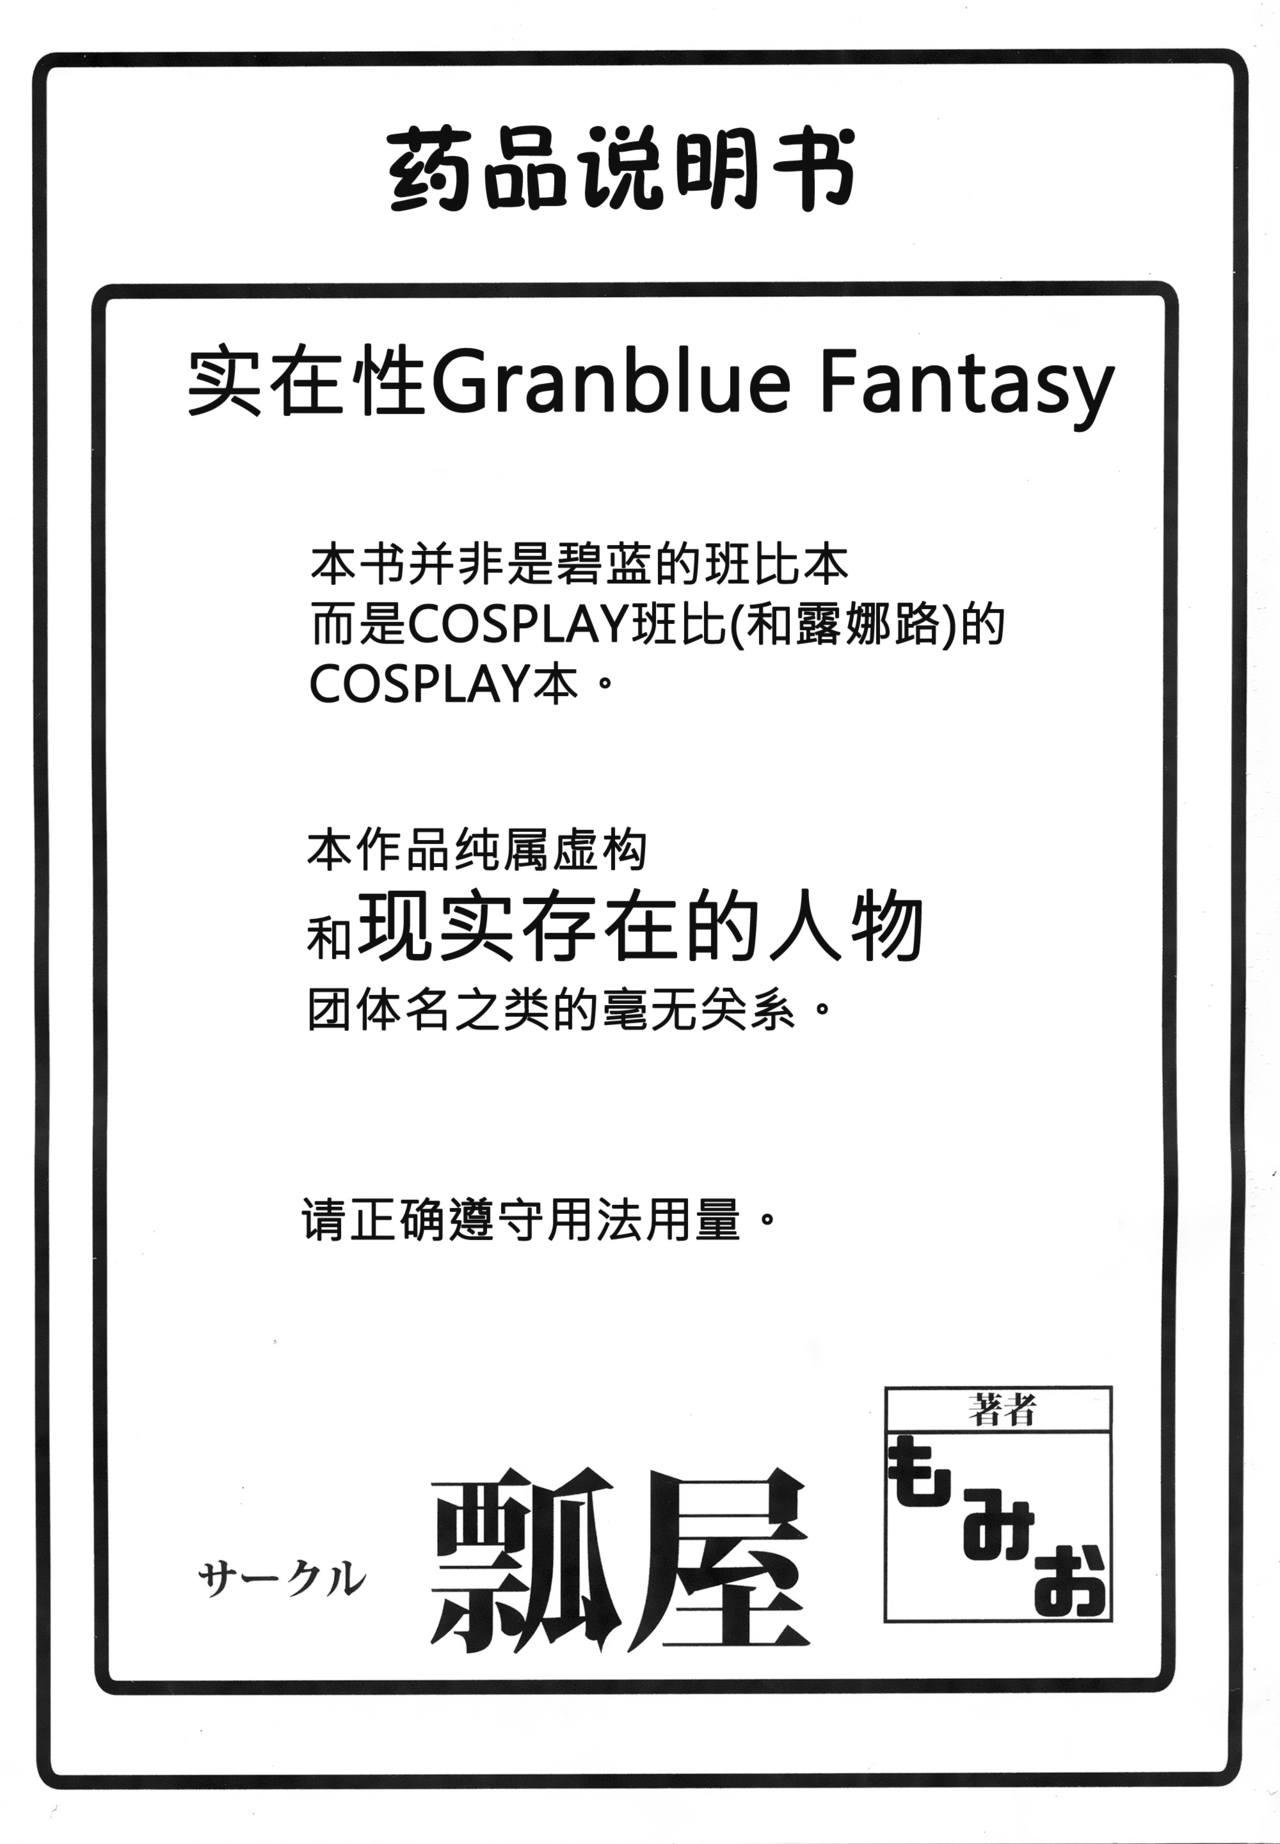 Jitsuzaisei Granblue Fantasy MANIAC 2